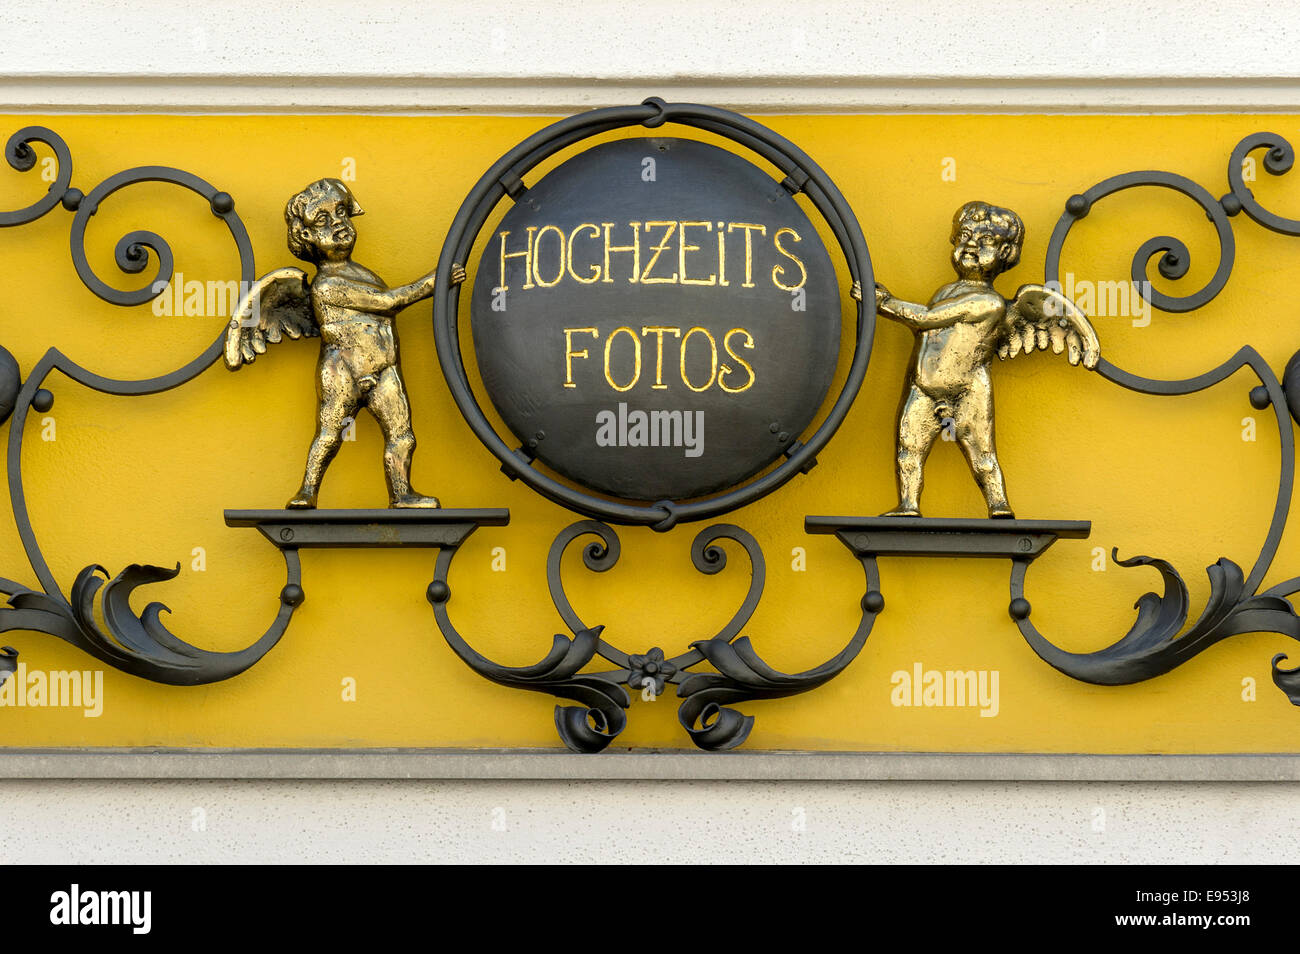 Schmiedeeisen-Zeichen für "Hochzeitsfotos" oder Hochzeitsfotos mit Putten auf eine Foto-Shop, Murnau, Upper Bavaria, Bavaria, Germany Stockfoto